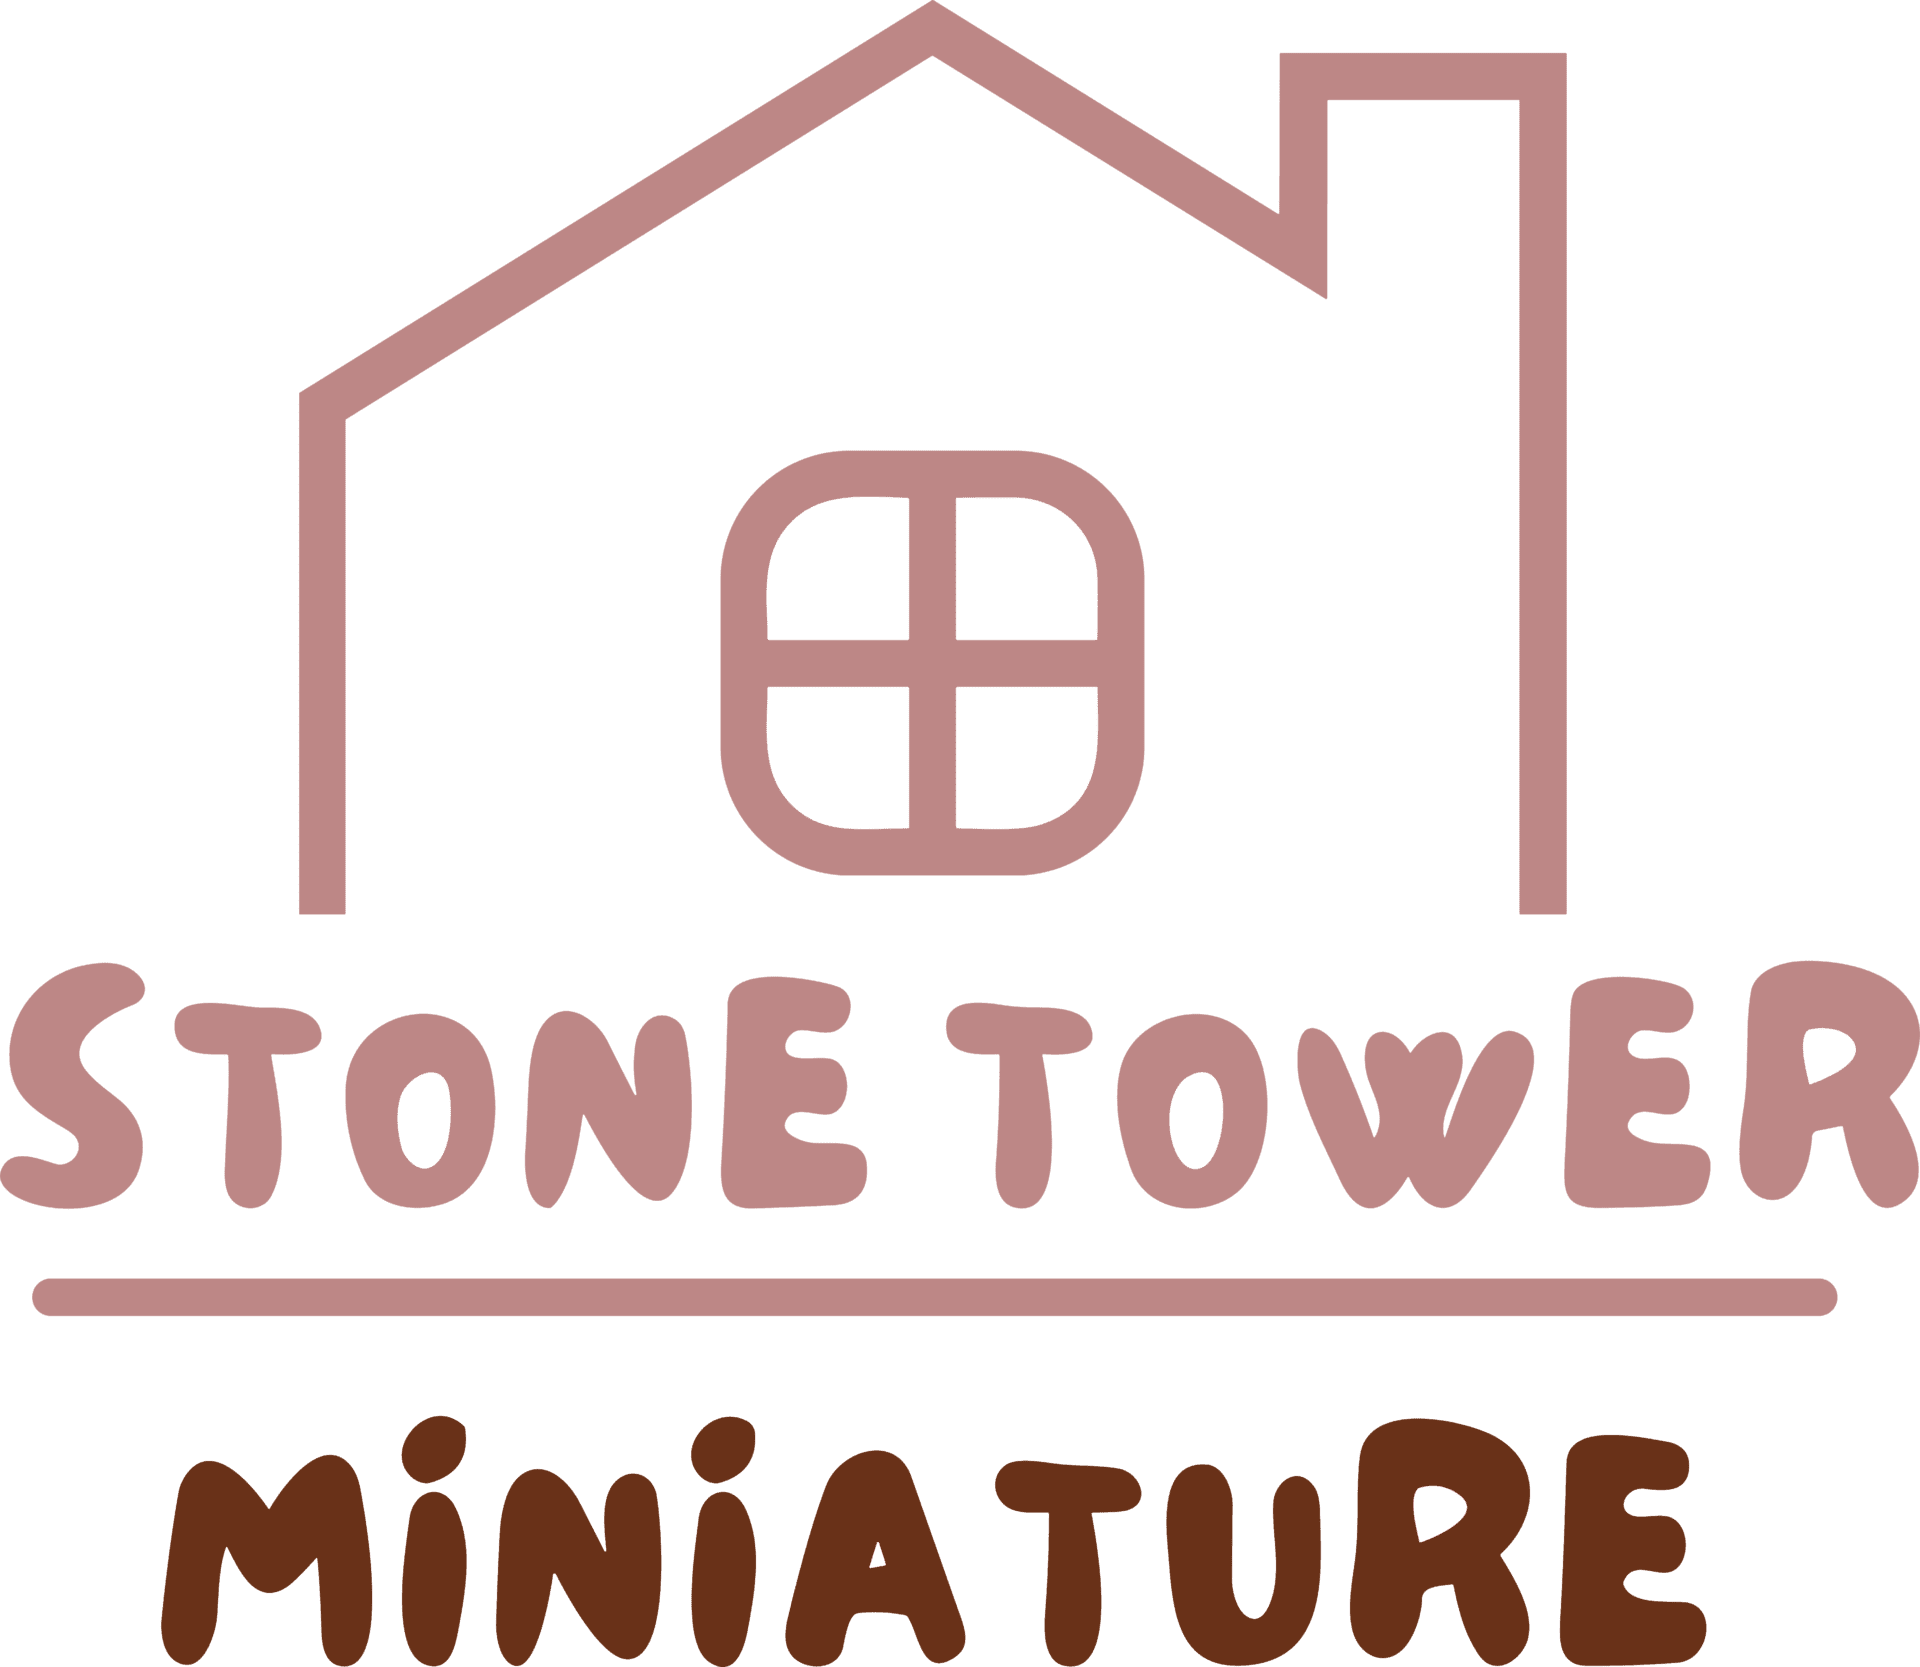 Stone tower miniatures logo.